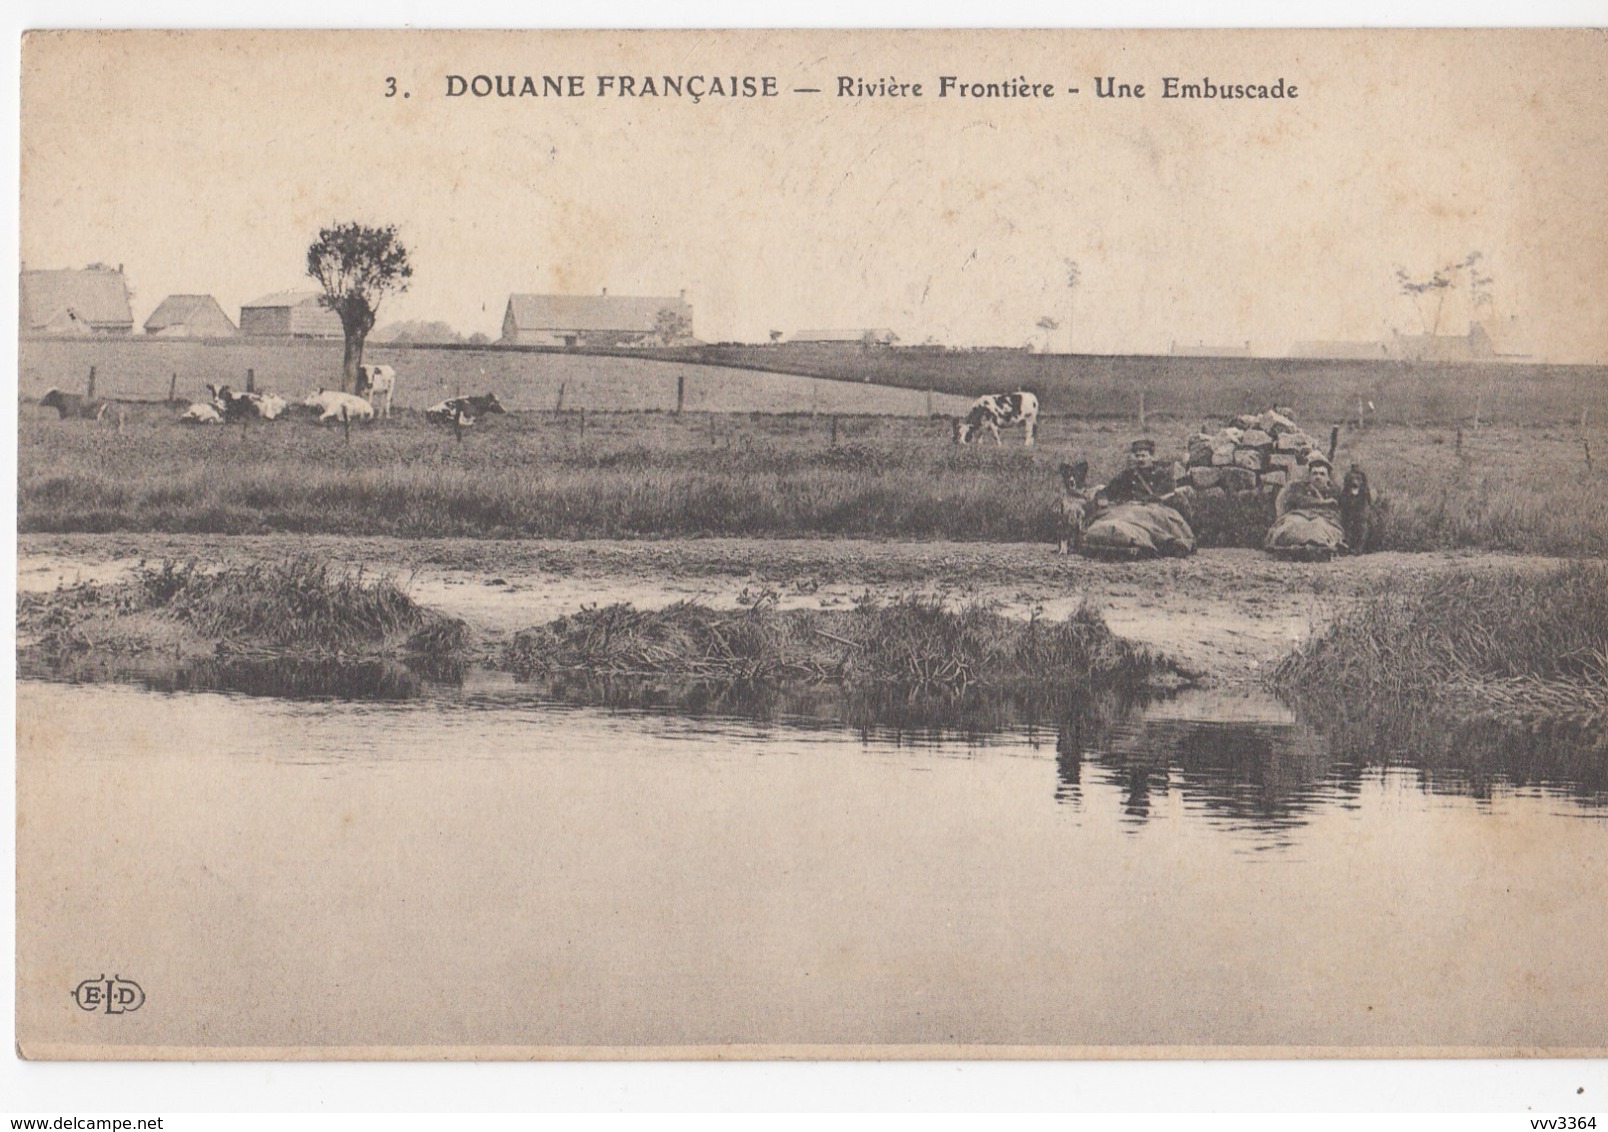 DOUANE FRANCAISE: Rivière Frontière - Une Embuscade - Douane